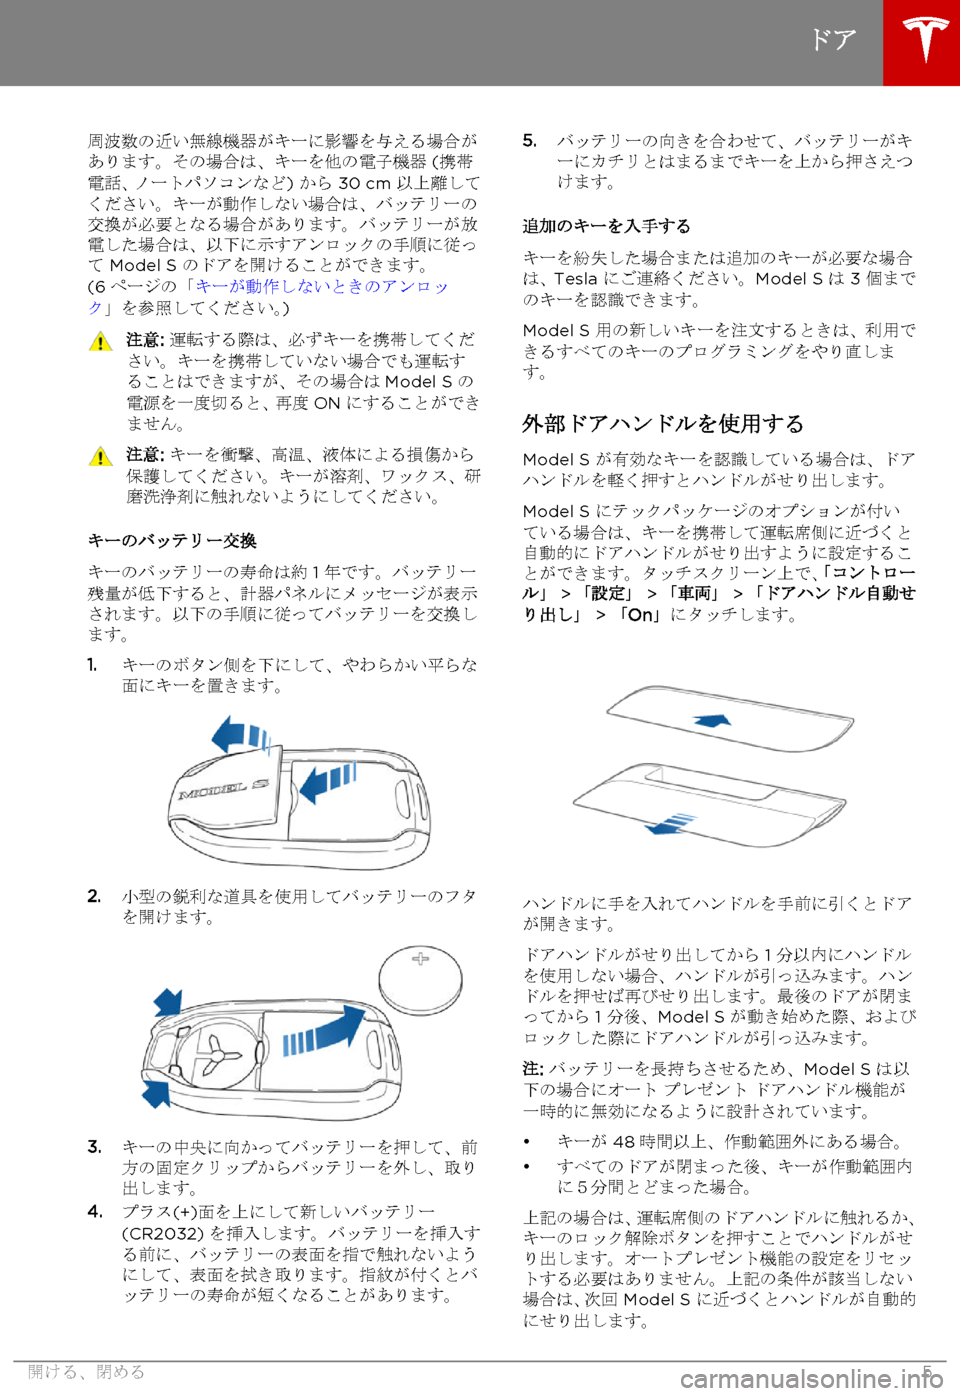 TESLA MODEL S 2015  取扱説明書 (in Japanese)  周波数の近い無線機器がキーに影響を与える場合があります。その場合は、キーを他の電子機器 (携帯電話、ノートパソコンなど) から 30 cm 以上離し